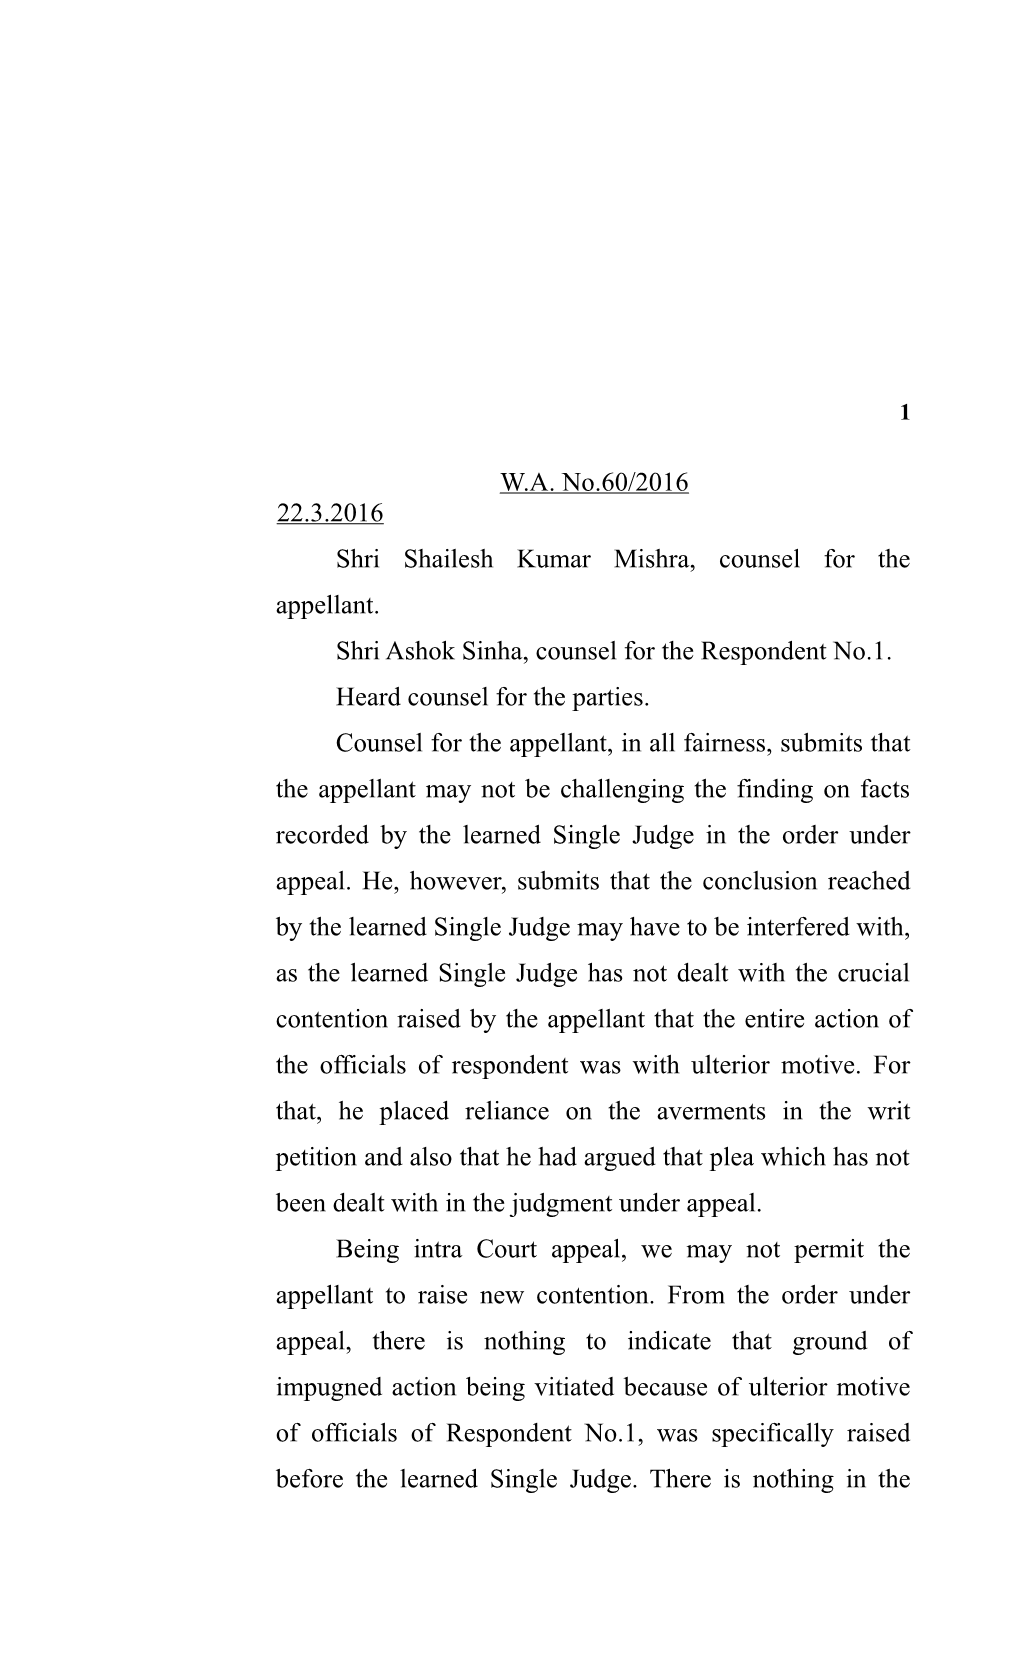 Shri Shailesh Kumar Mishra, Counsel for the Appellant